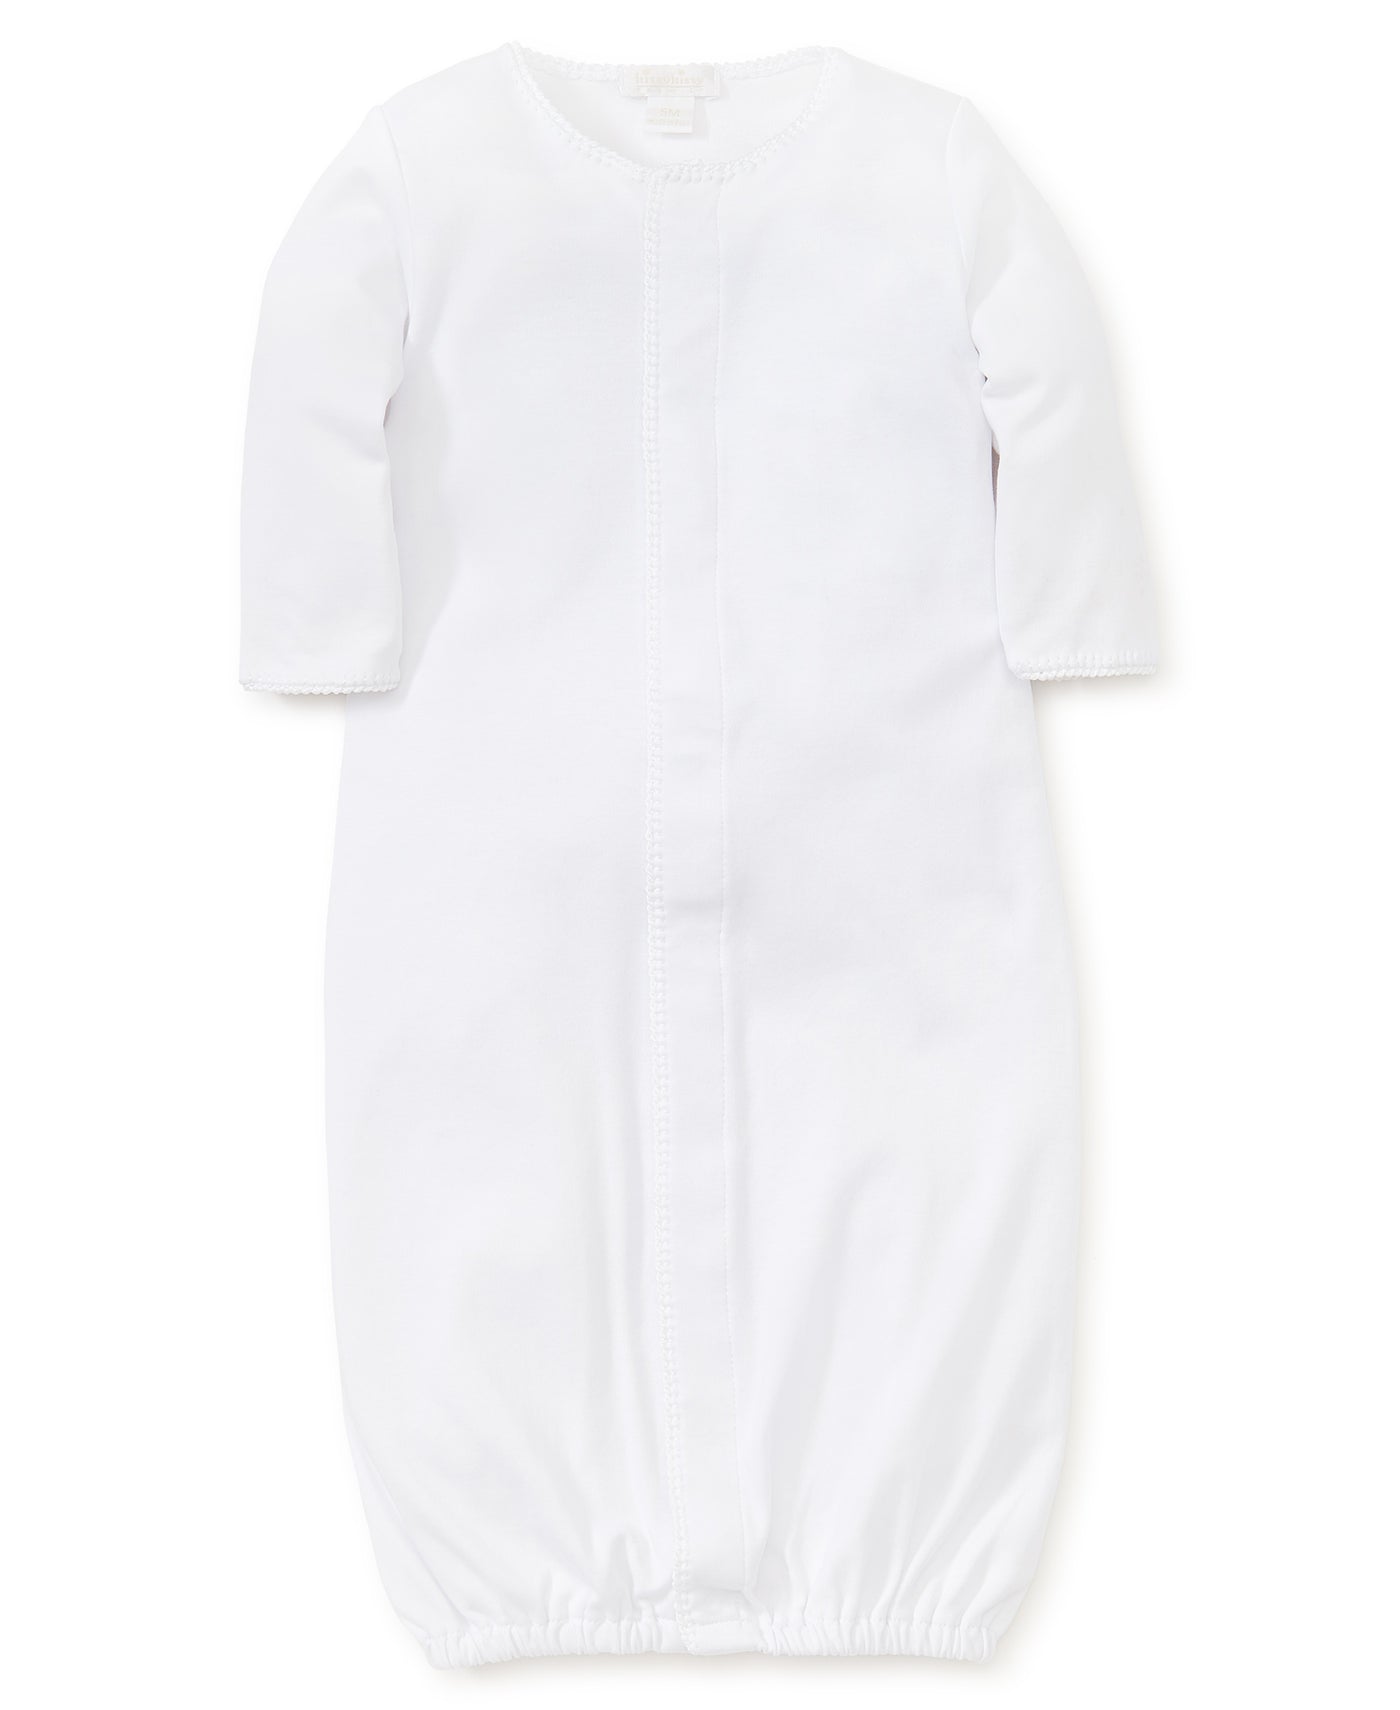 Premier Basics Converter Gown - White